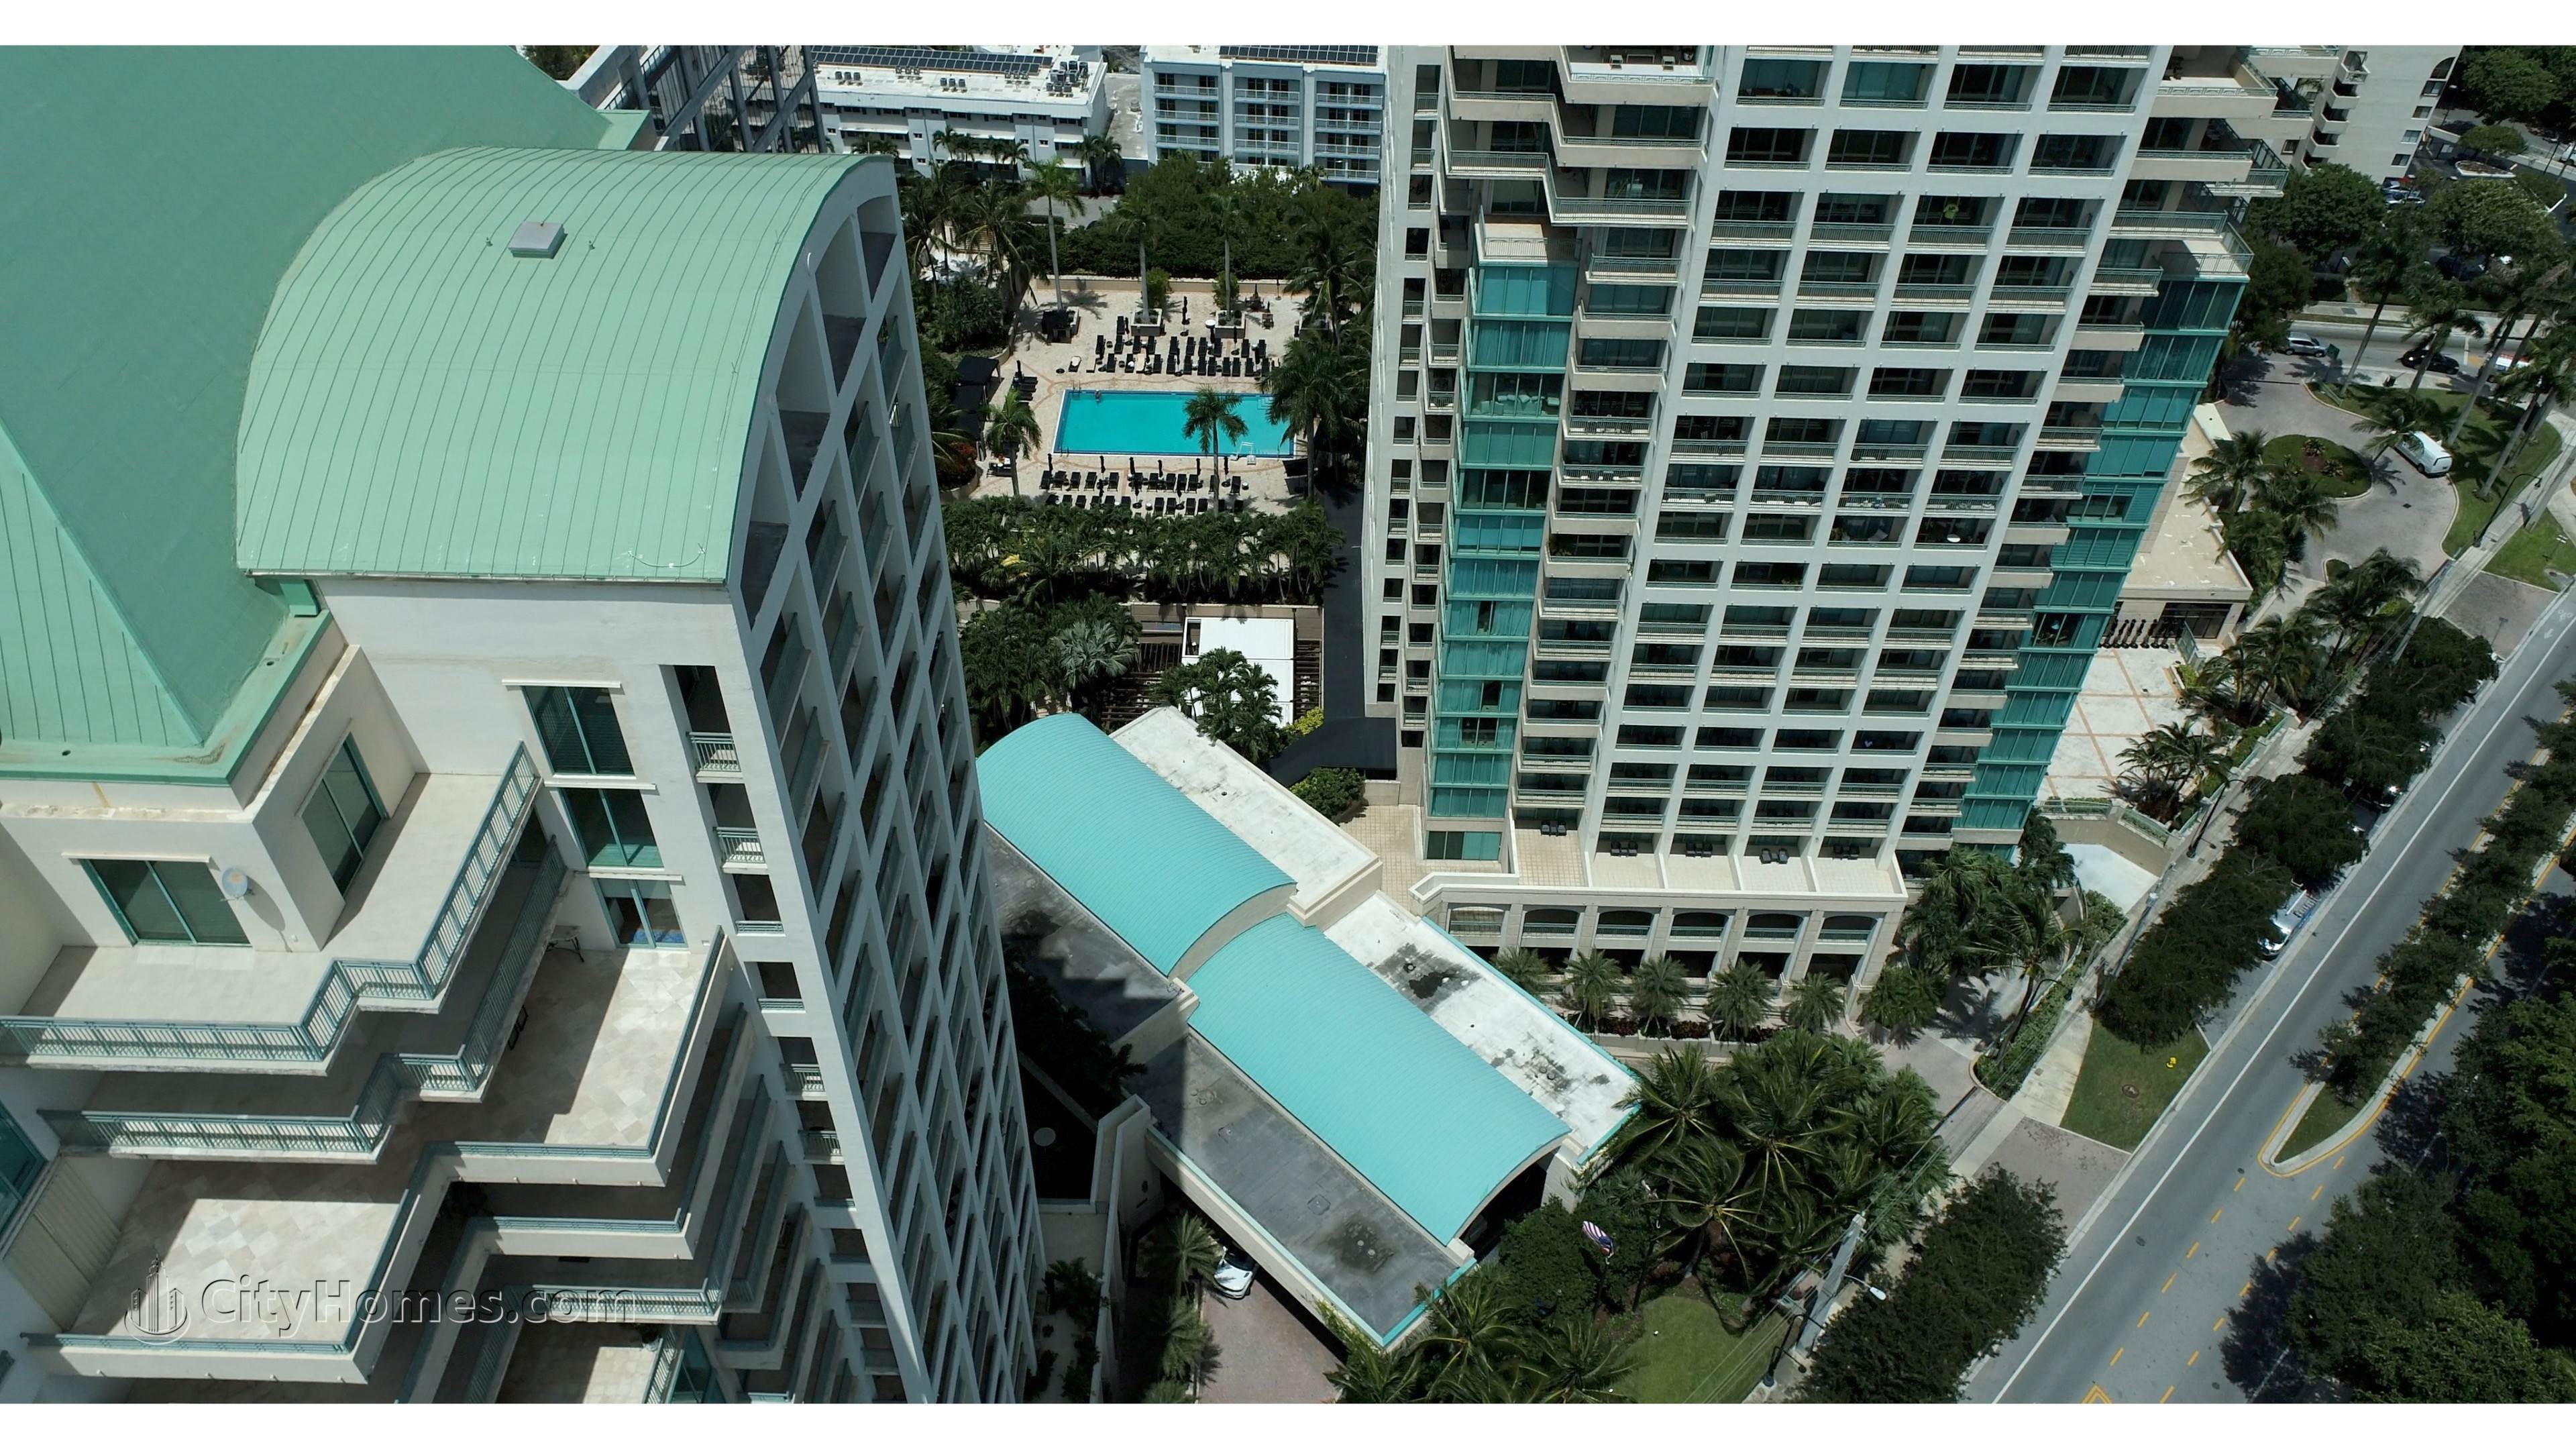 5. Ritz-Carlton Coconut Grove building at 3300 And 3350 SW 27th Avenue, Miami, FL 33133